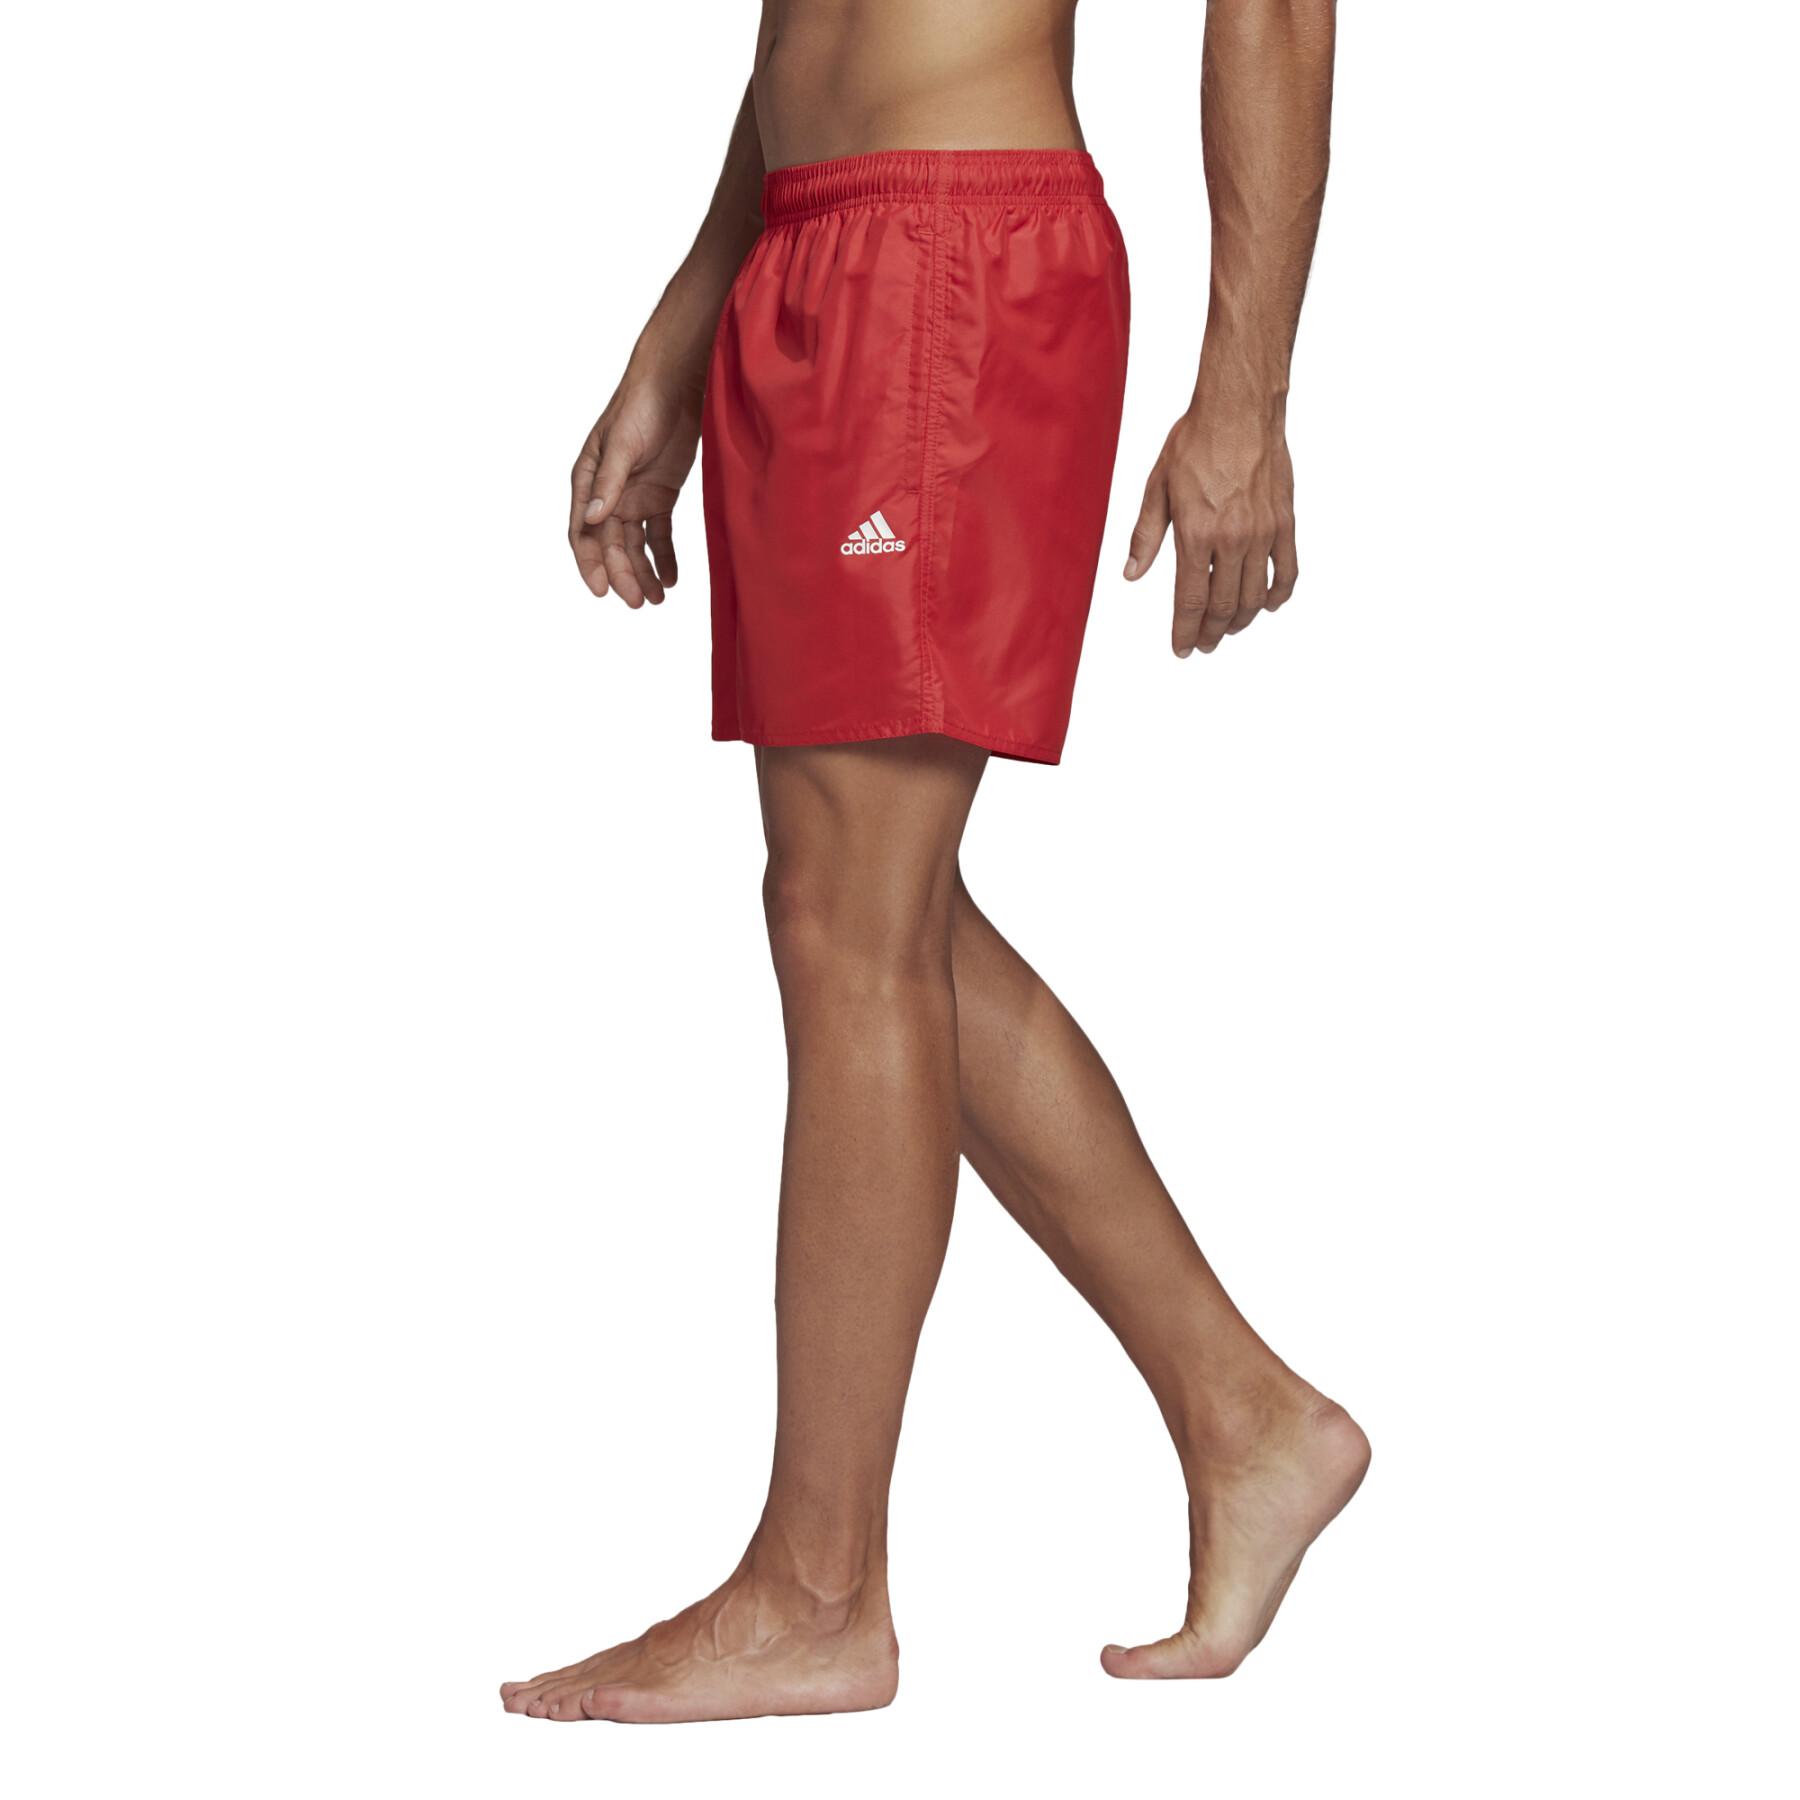 CLX Solid Swim Shorts